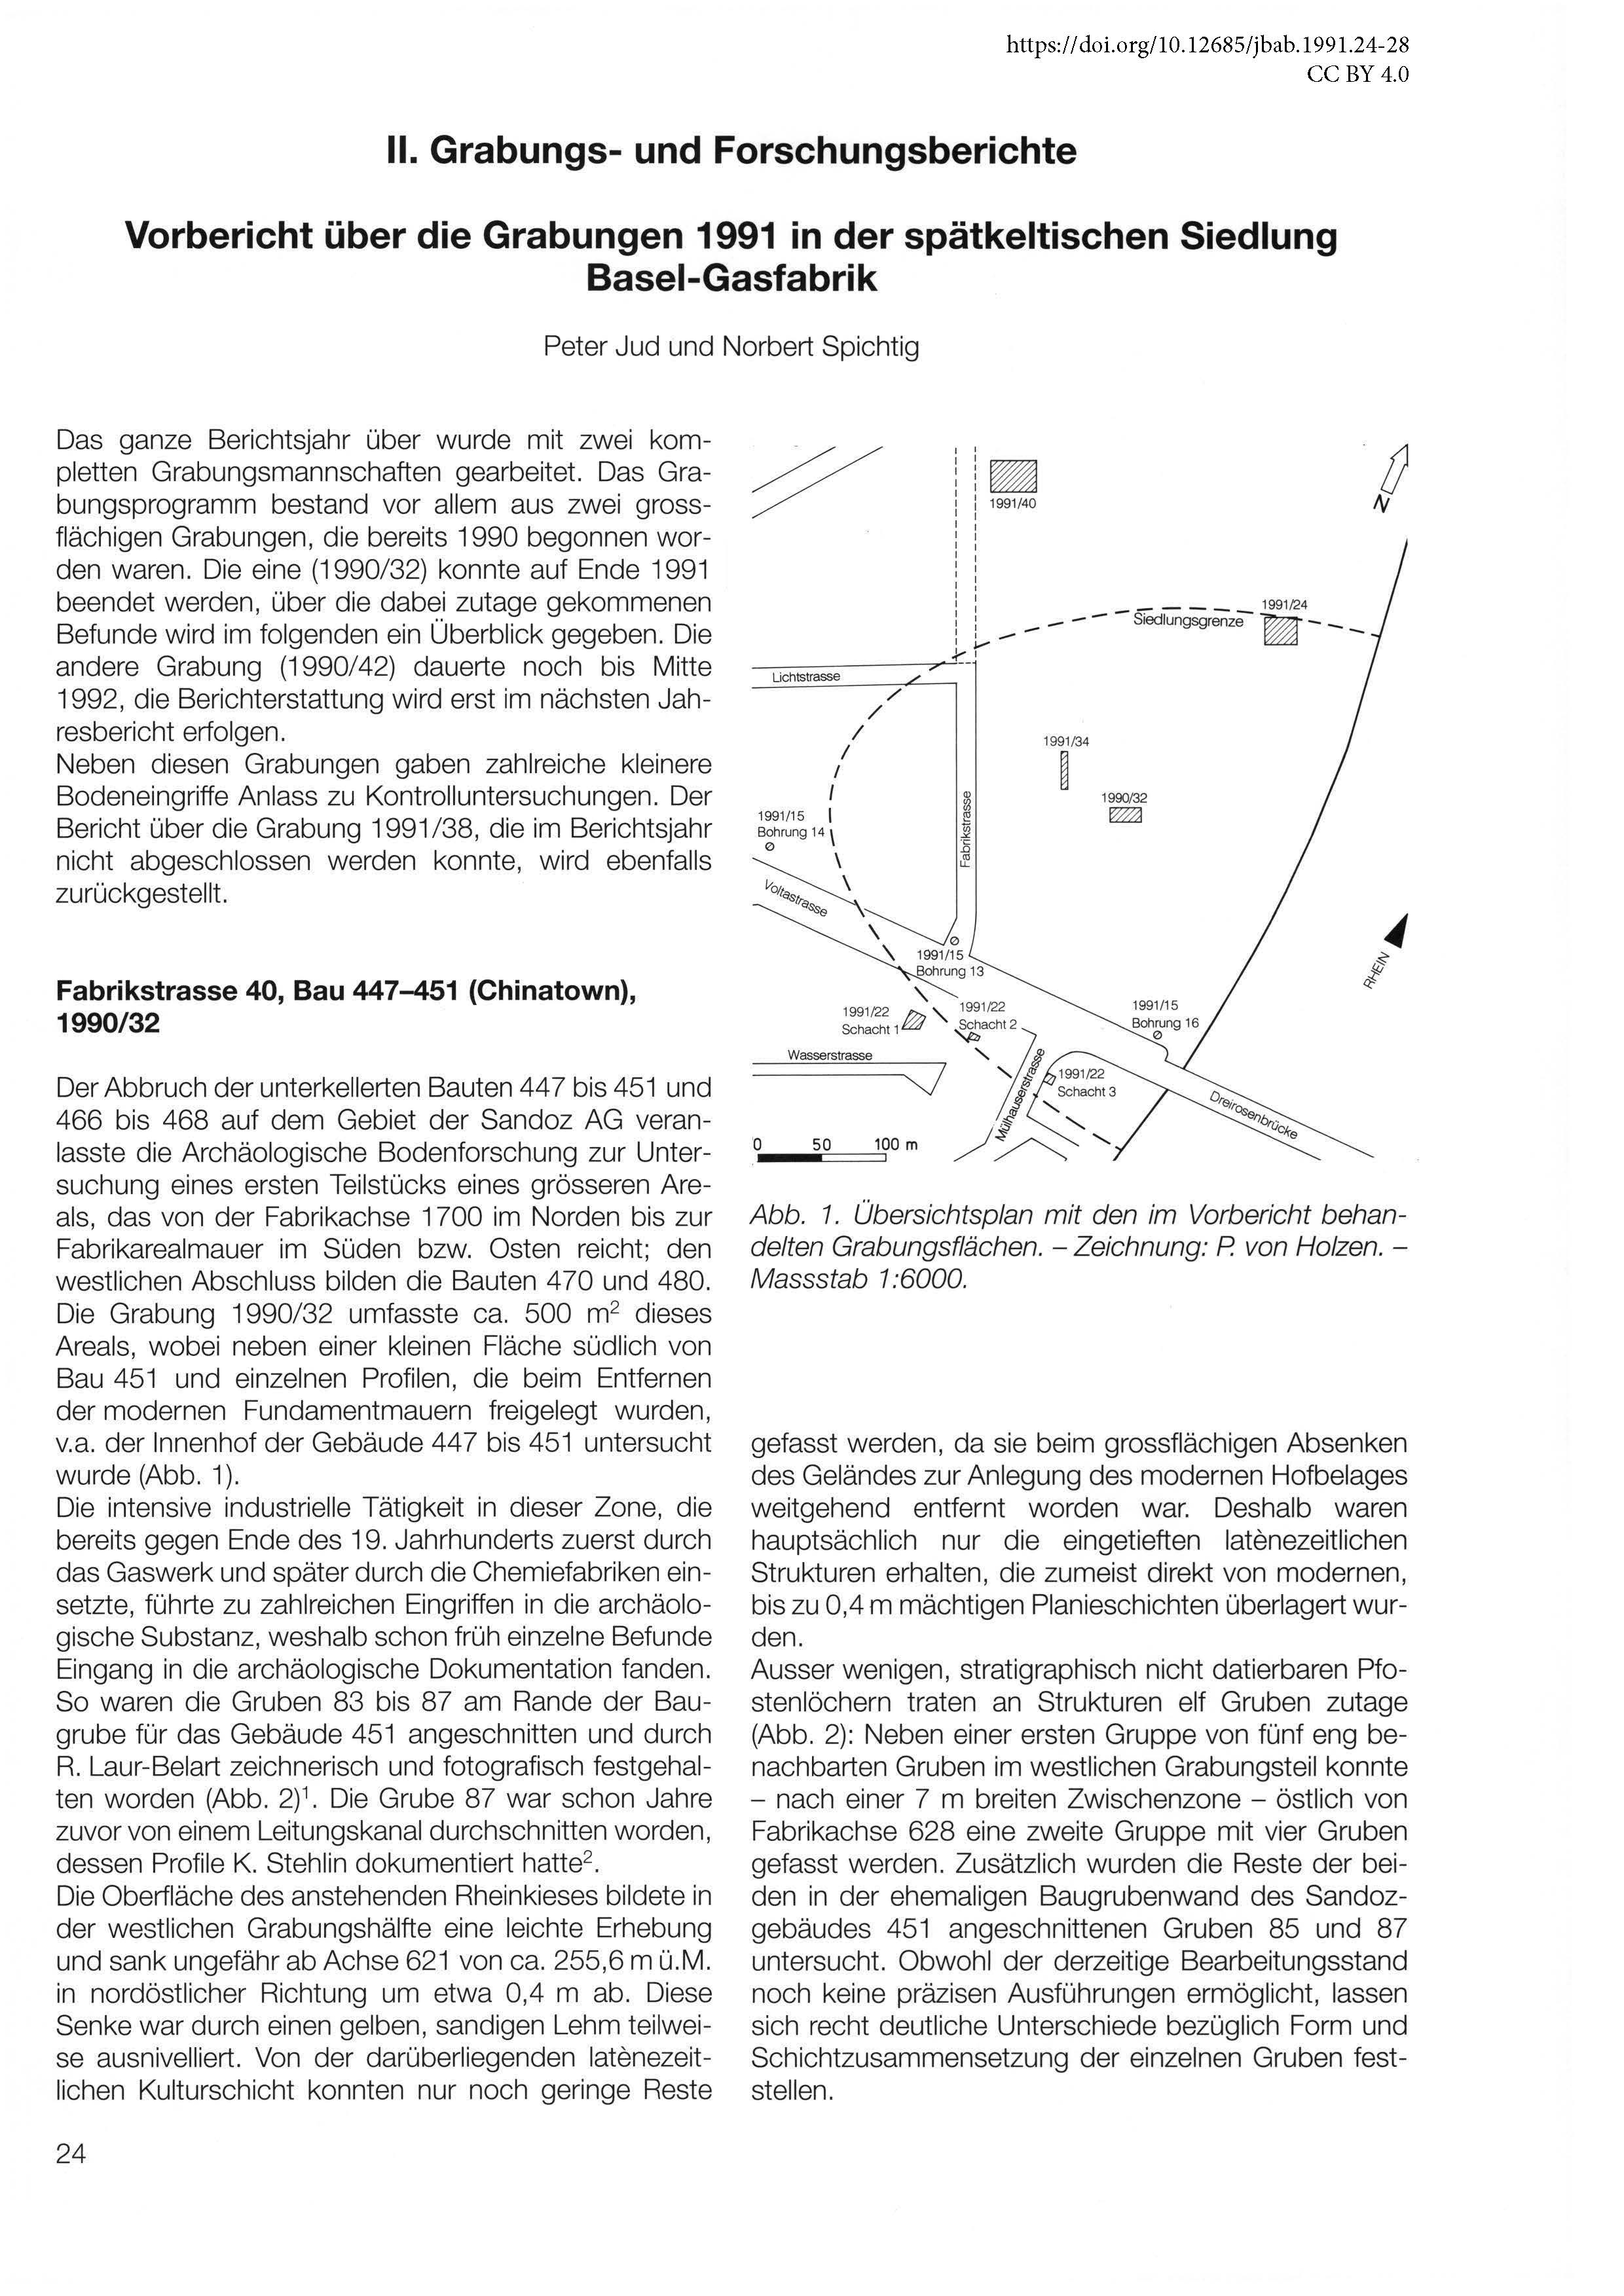 Erste Seite des Vorberichts über die Grabungen bei Basel-Gasfabrik